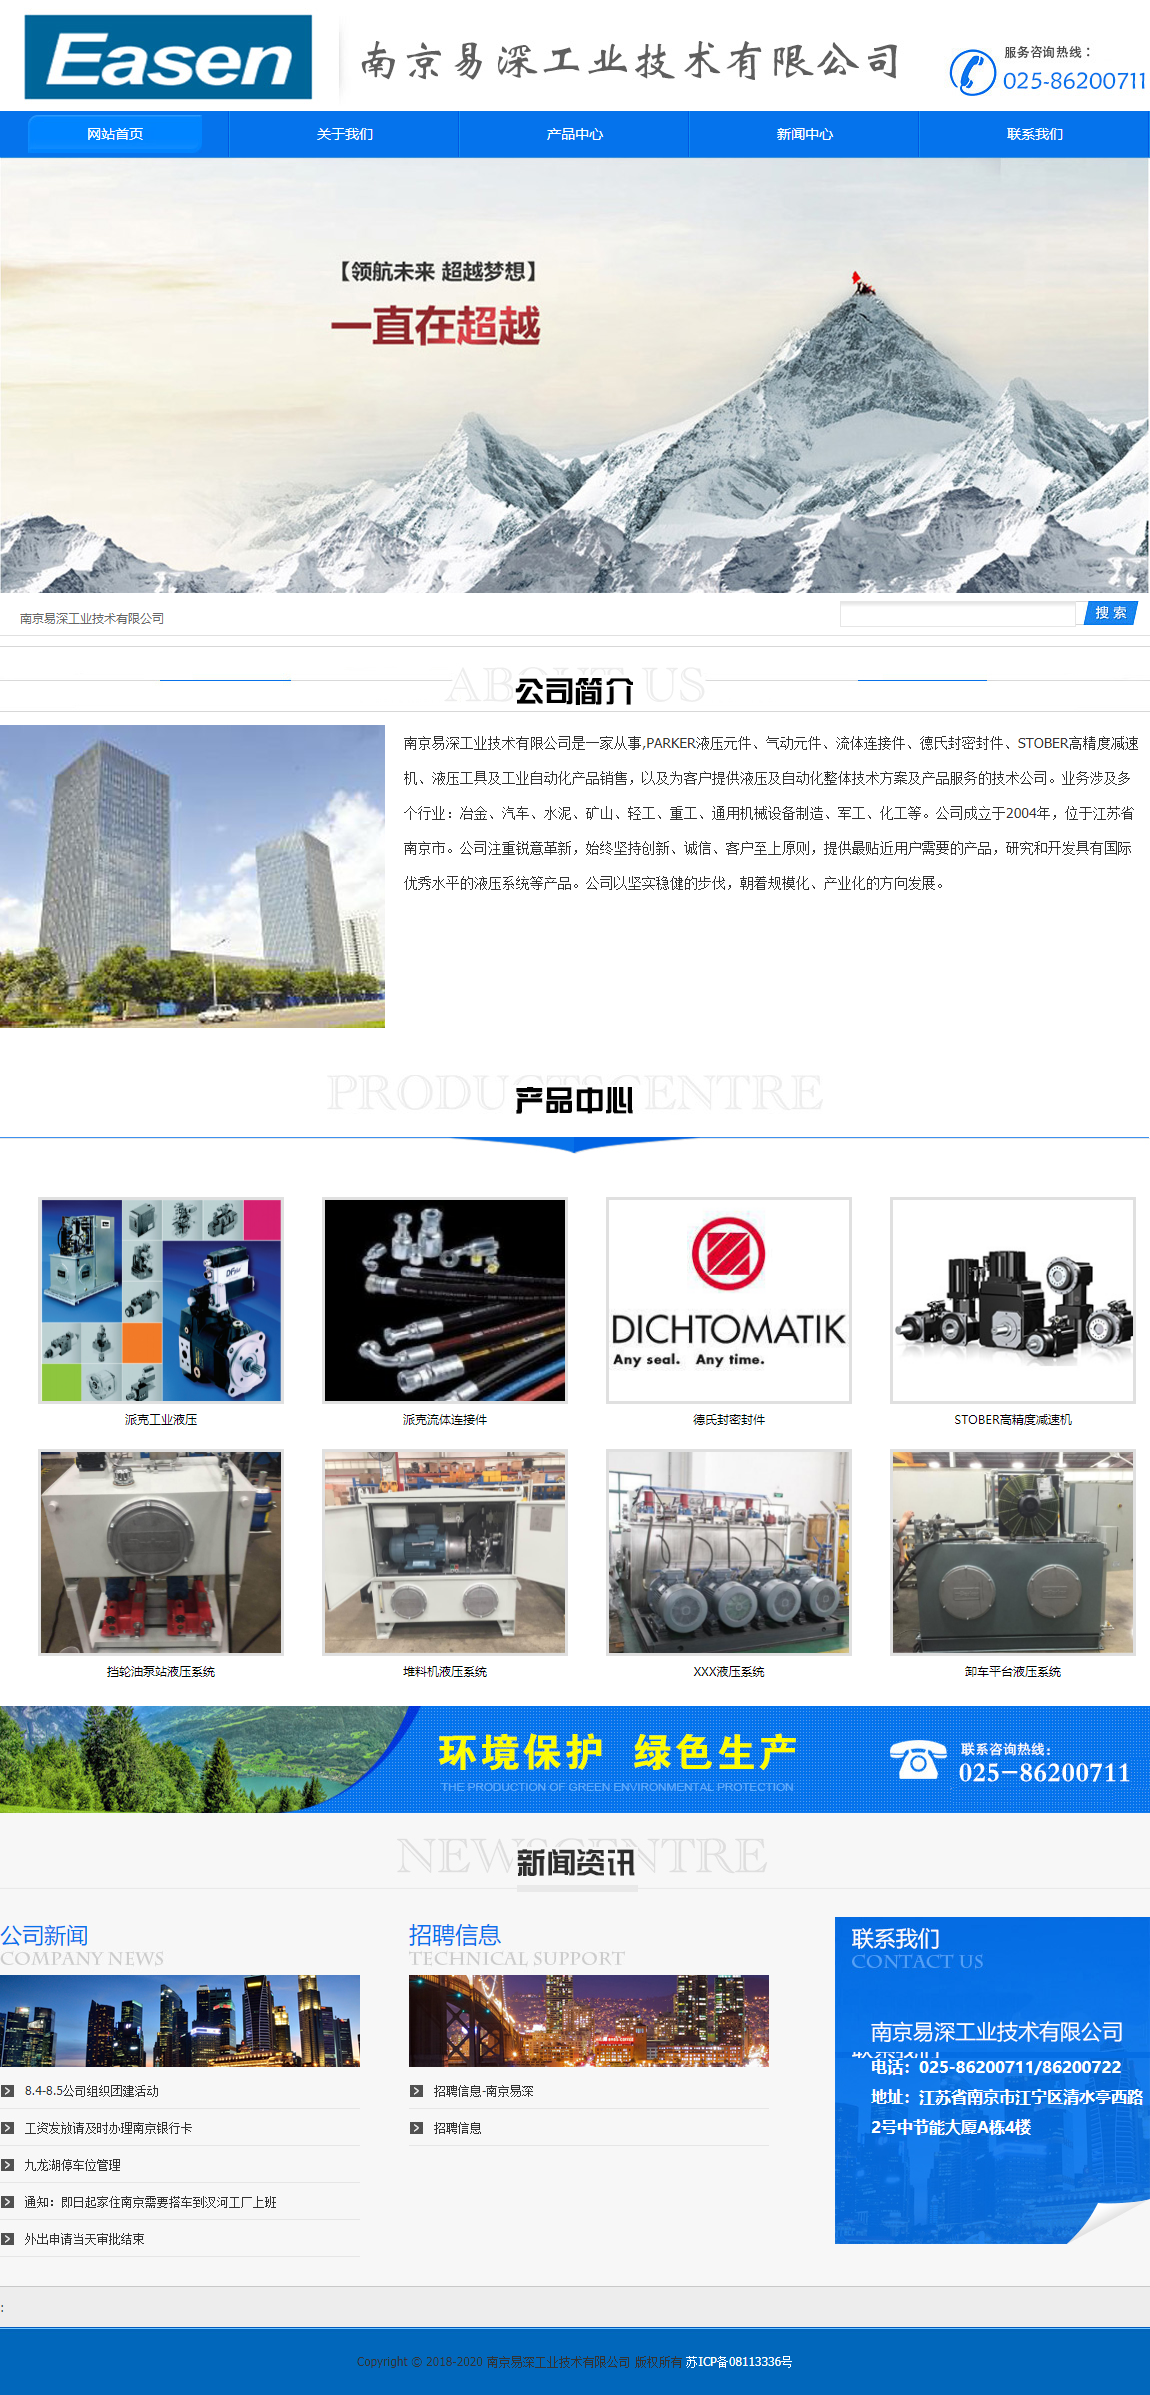 南京易深工业技术有限公司网站案例